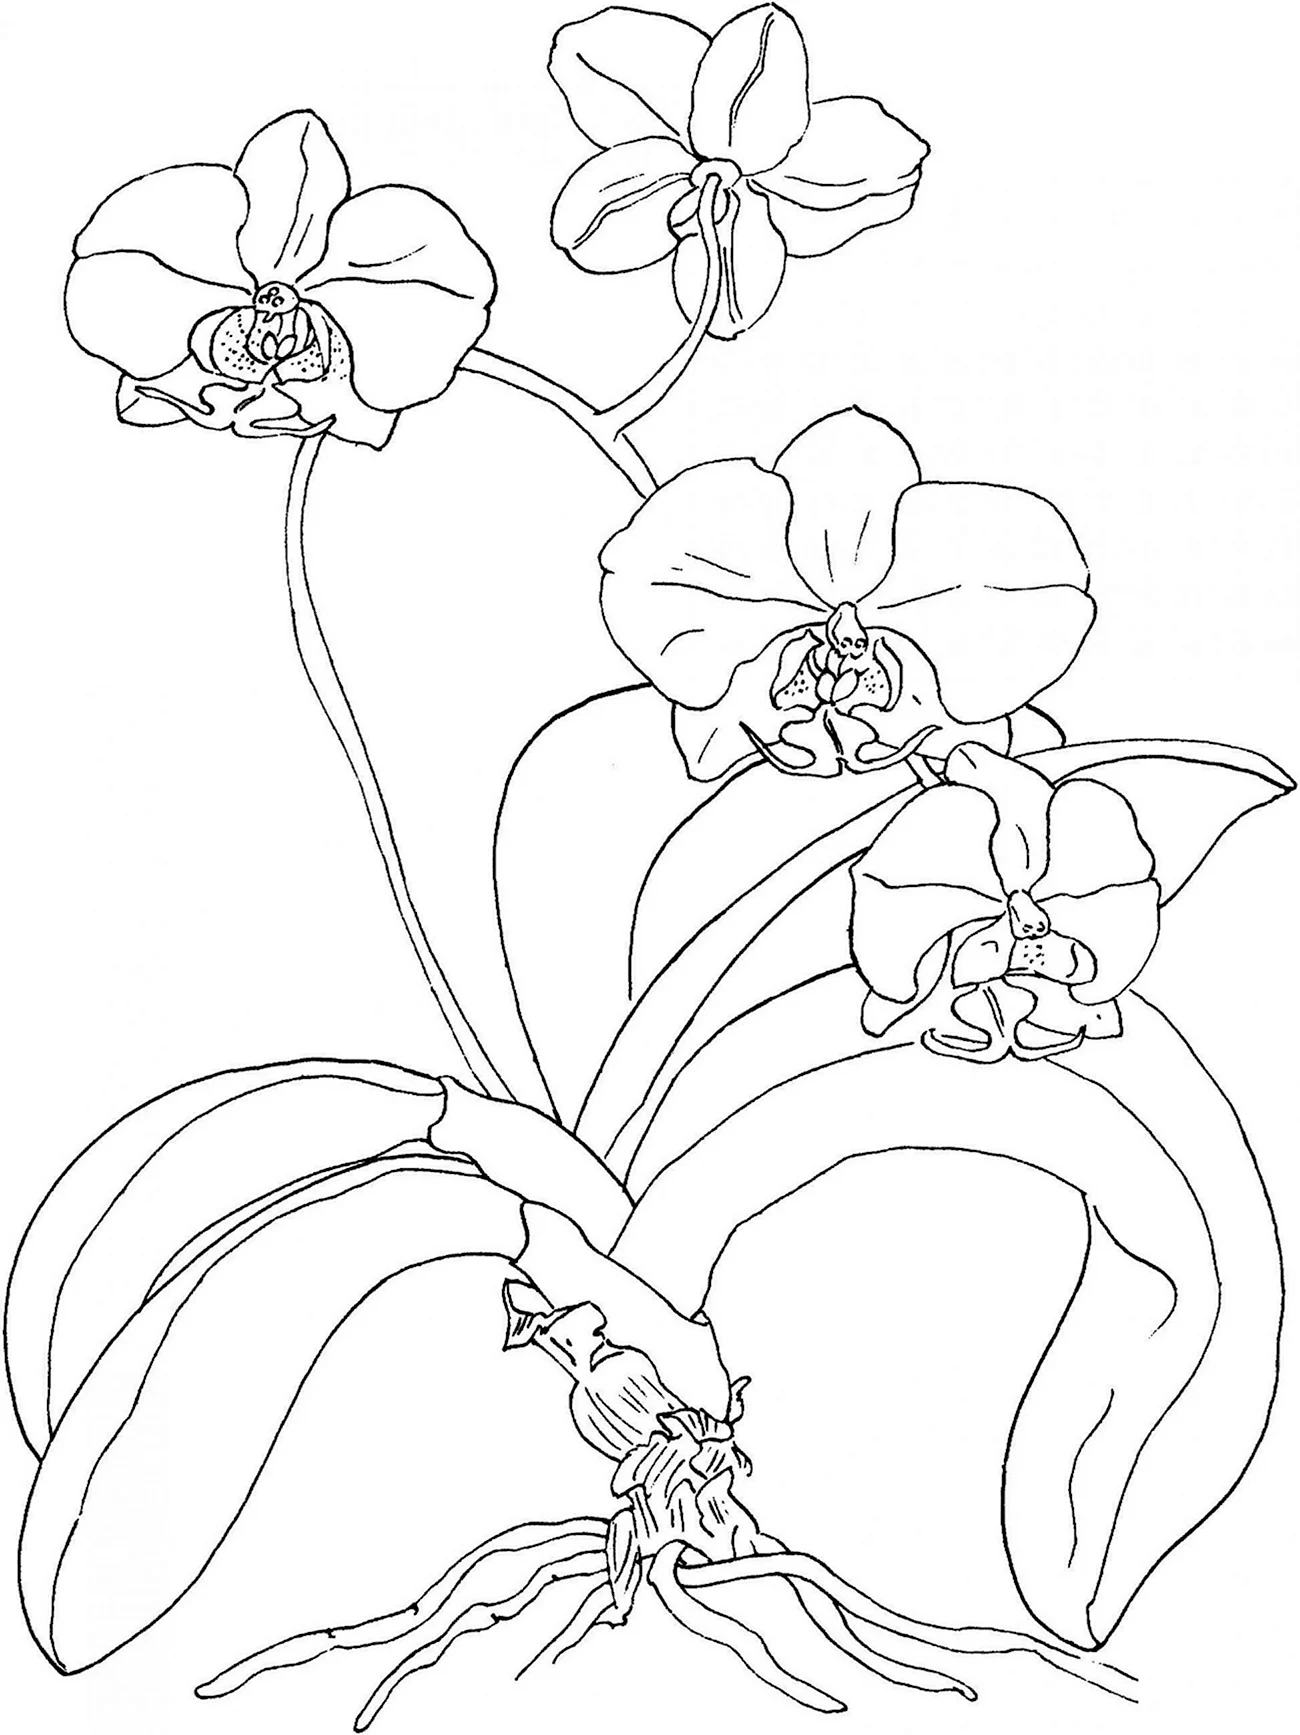 Орхидея раскраска. Для срисовки